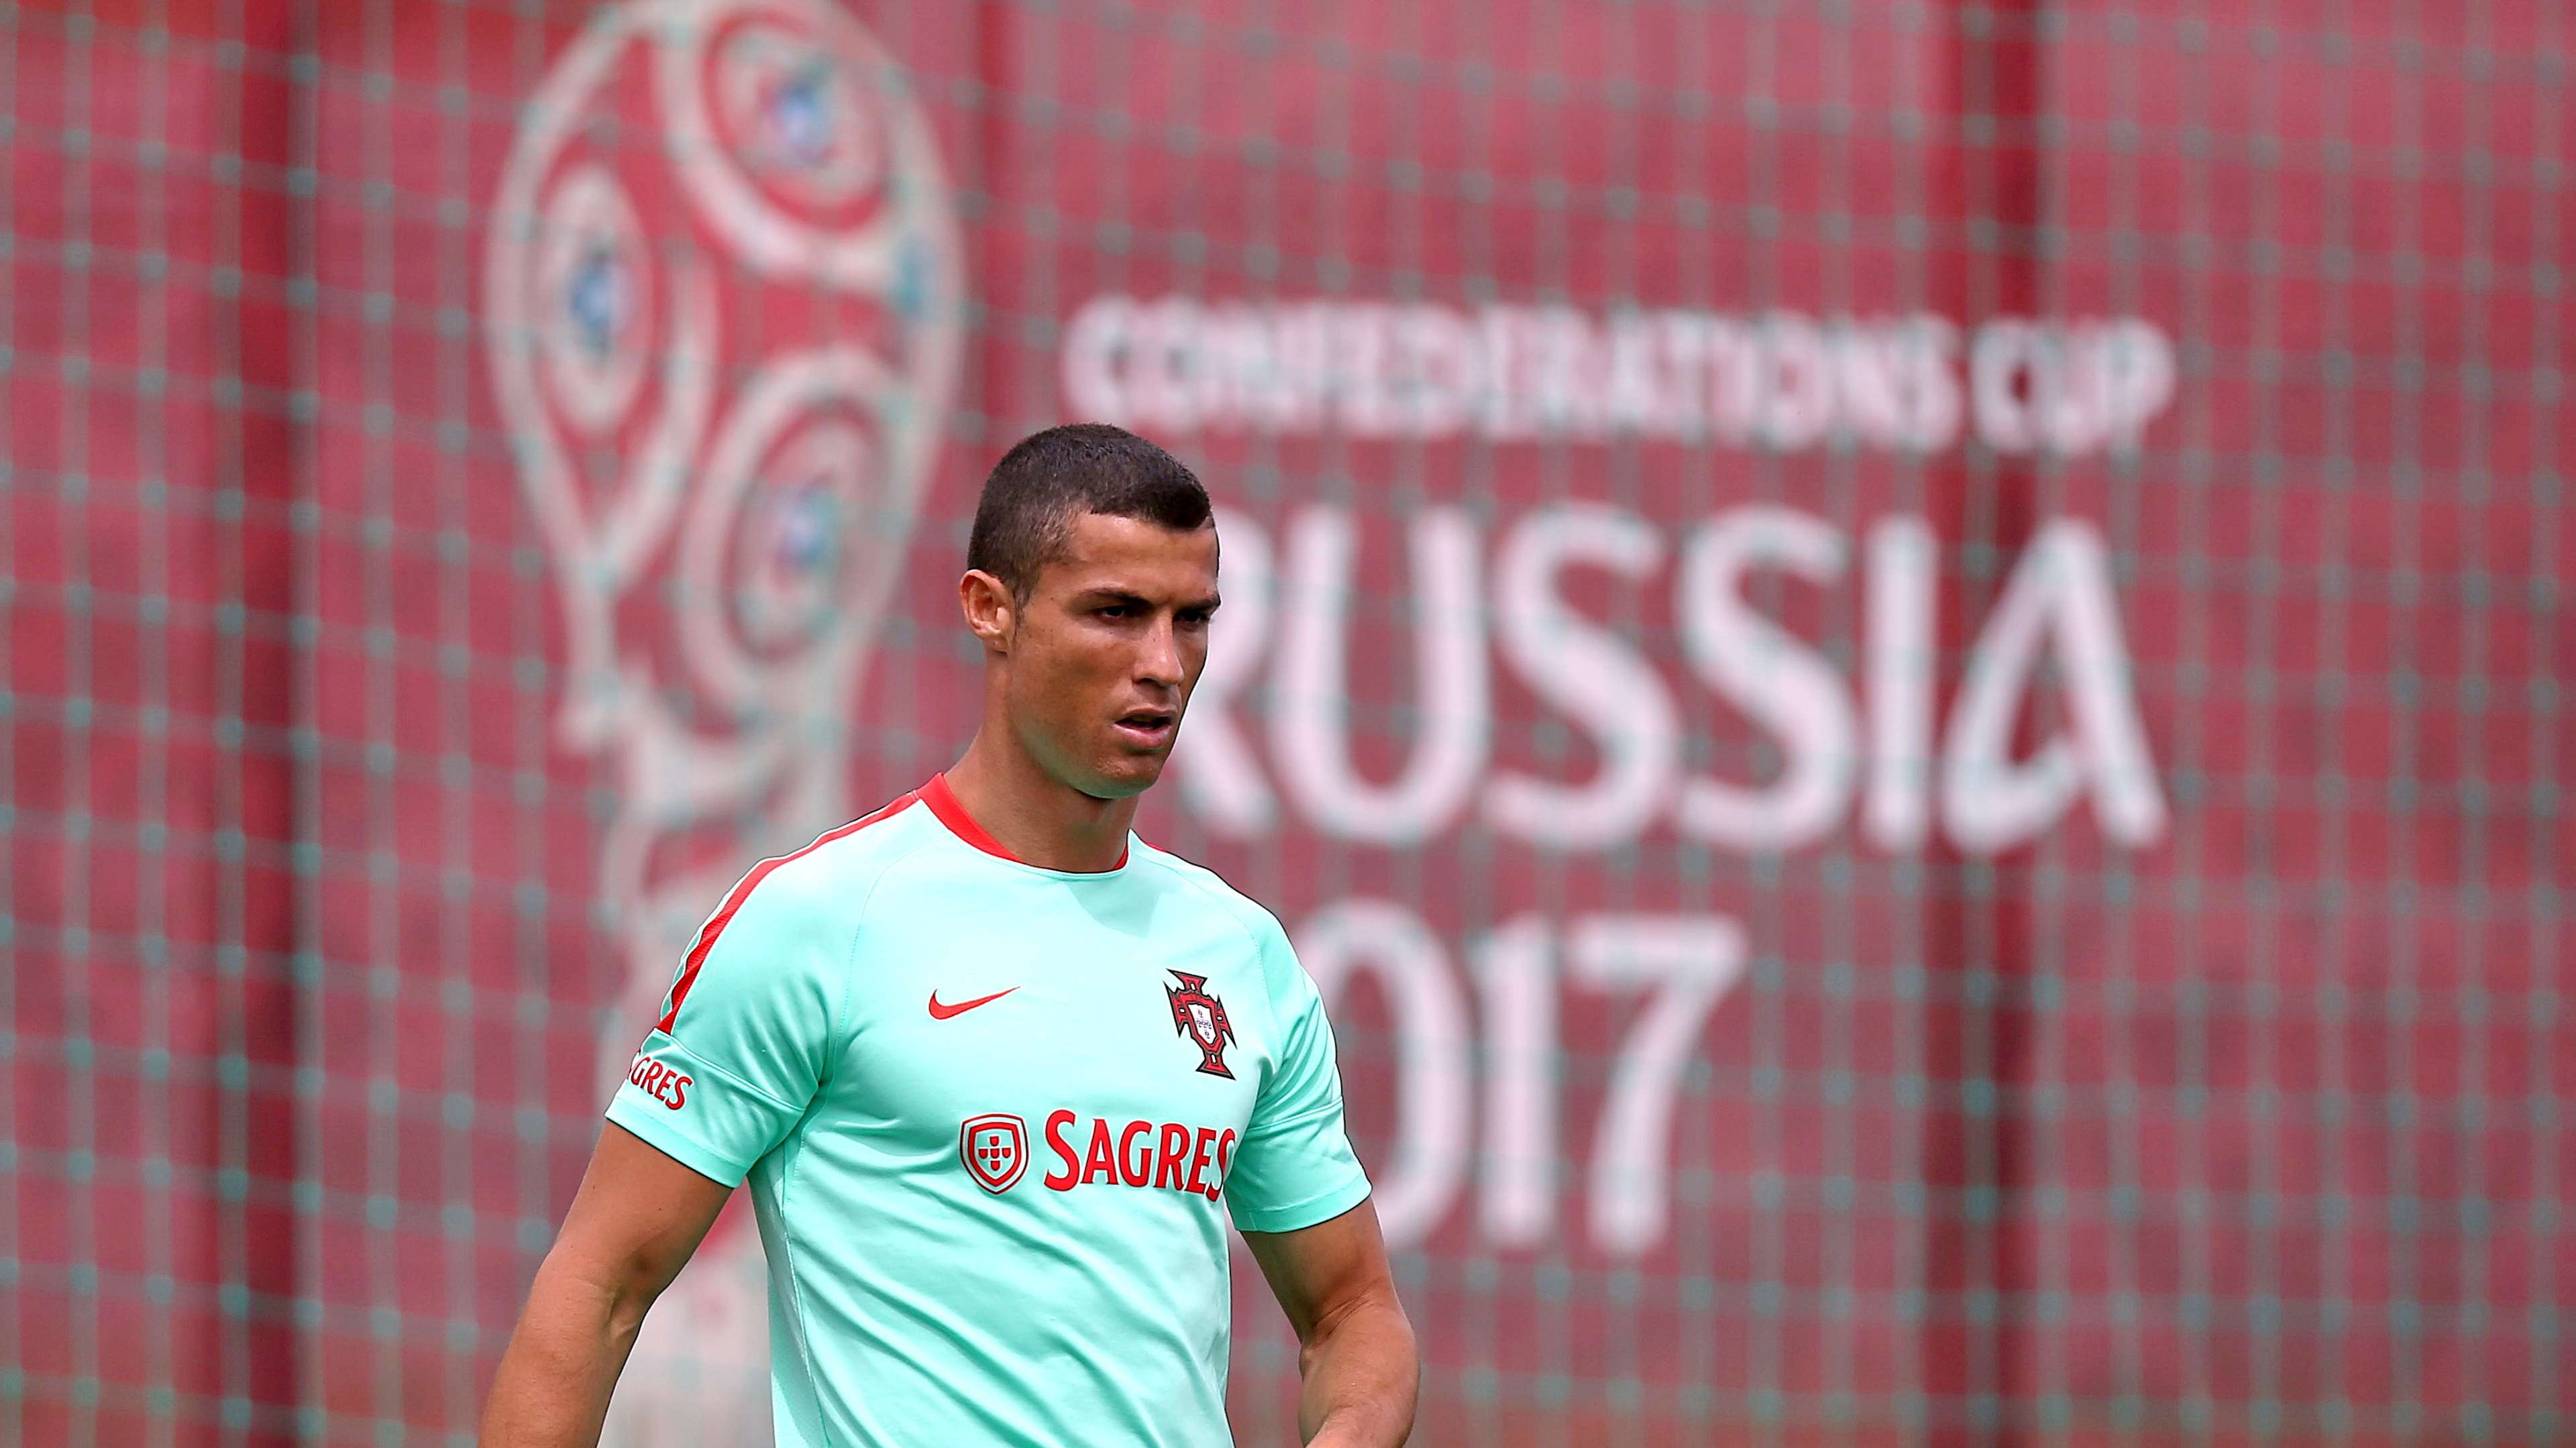 Cristiano Ronaldo Portugal Confederations Cup 2017